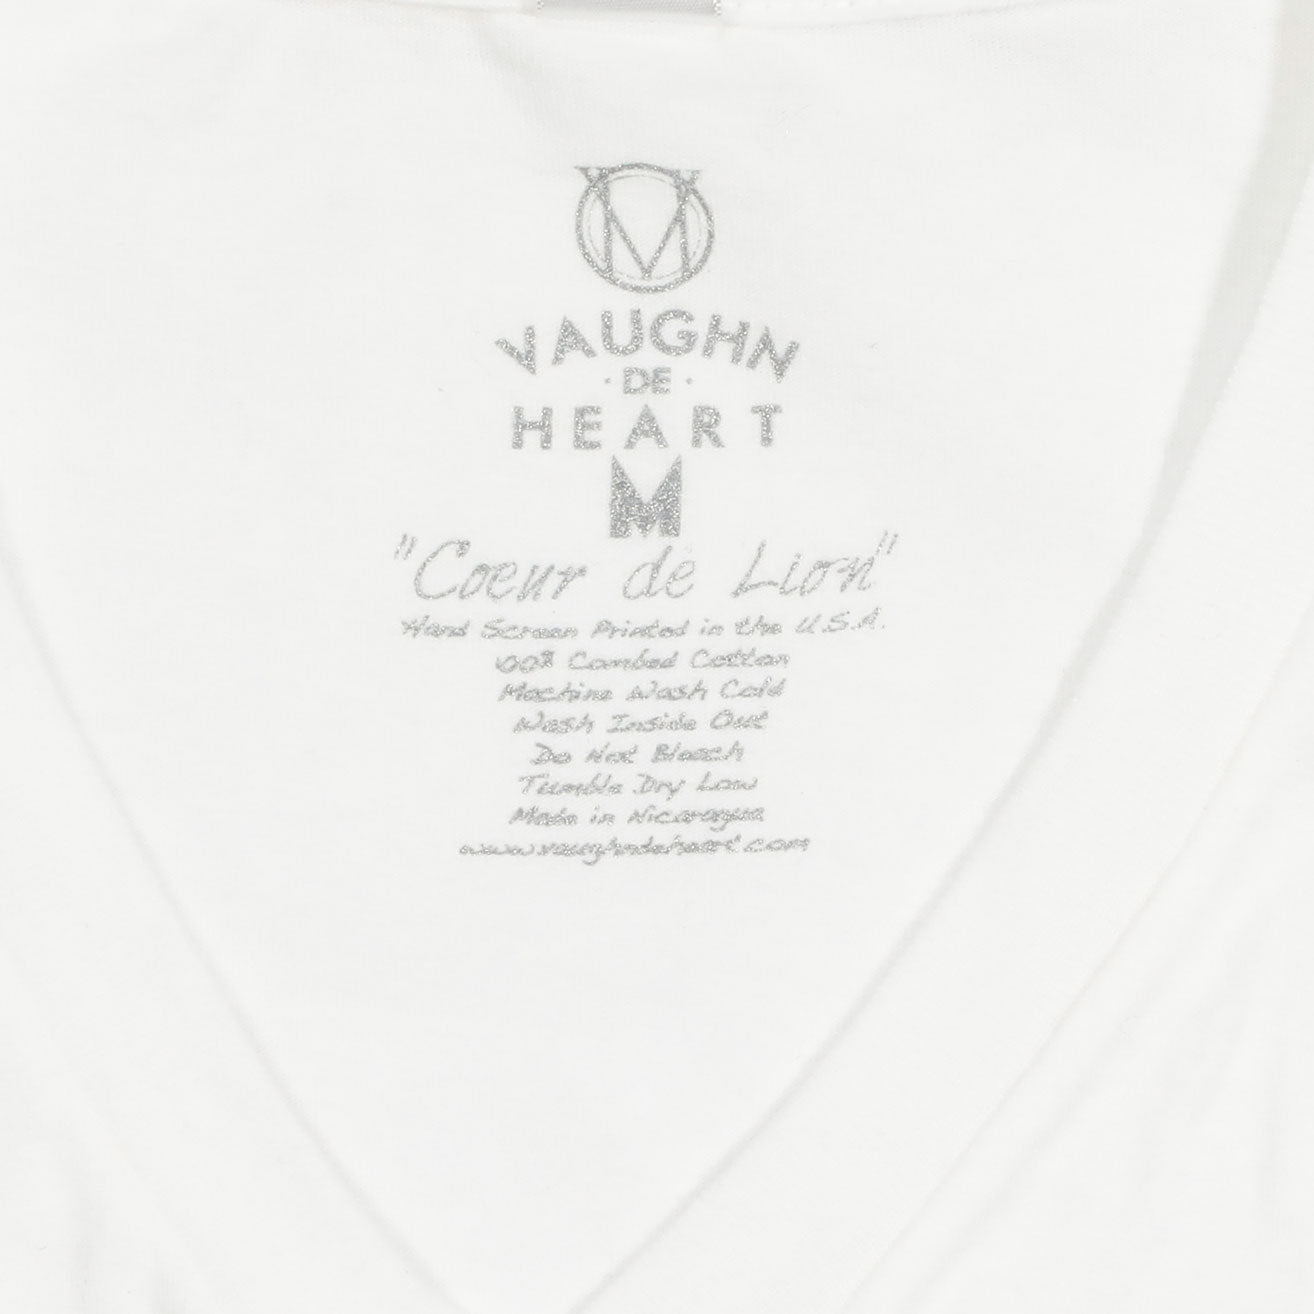 Men's - Blank White V-Neck T-Shirt-Vaughn de Heart